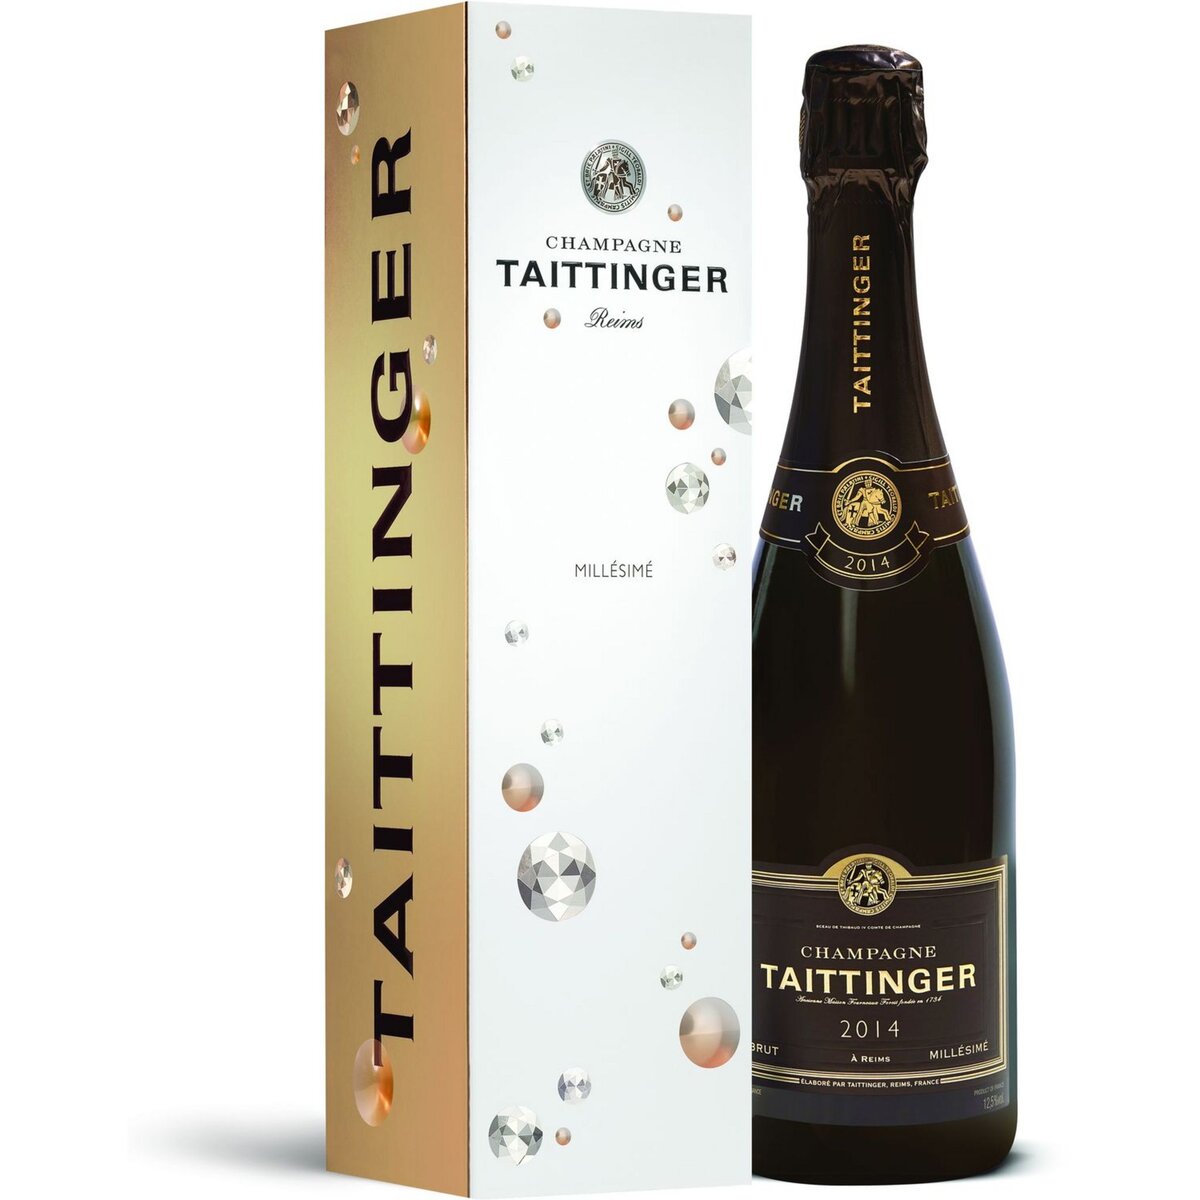 TAITTINGER AOP Champagne Taittinger brut 2014 75cl